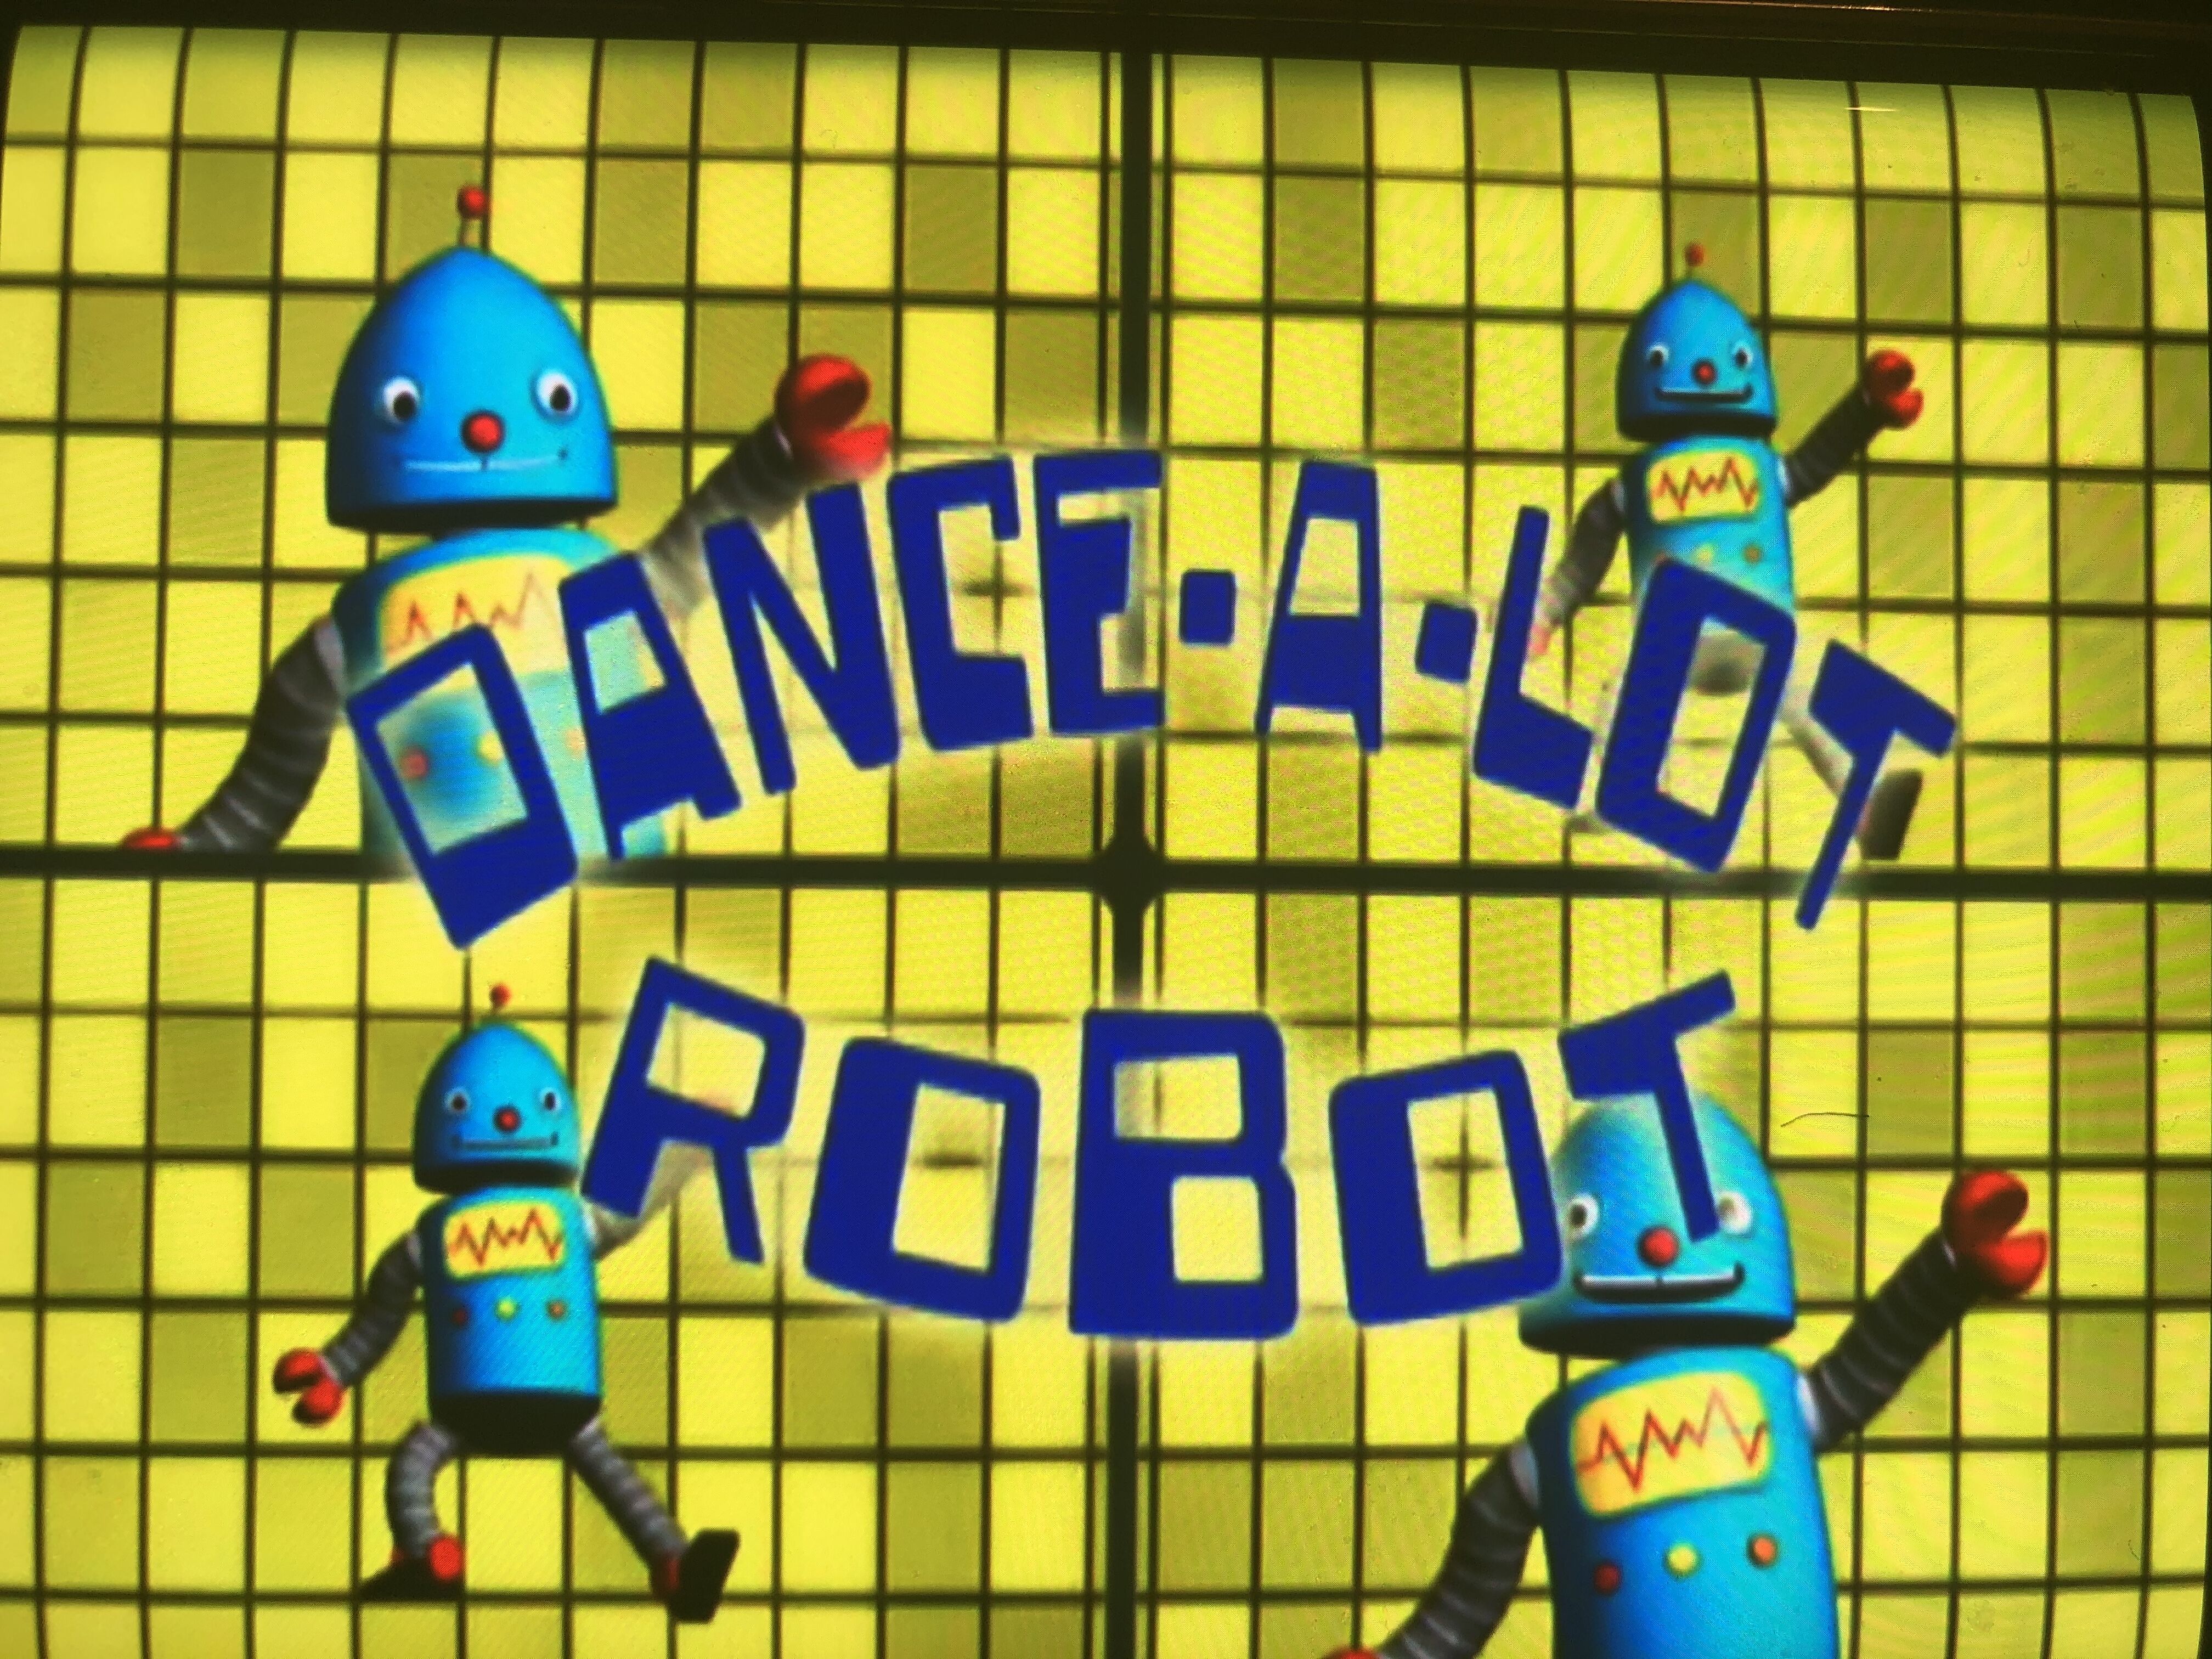 Dance-a-Lot Robot | Soundeffects Wiki | Fandom